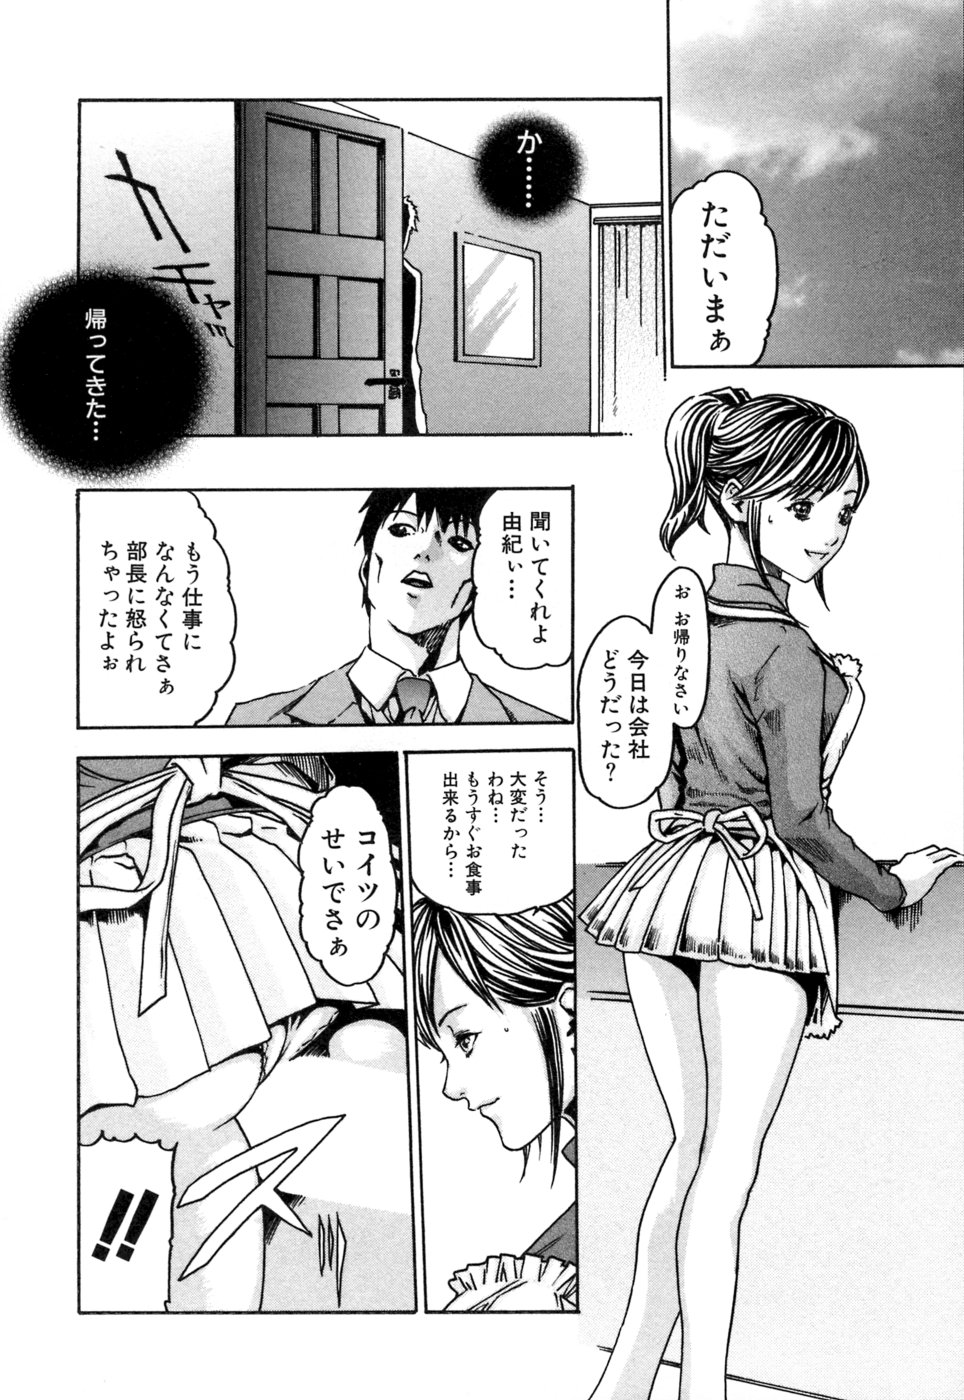 [Haruki] Kisei Juui Suzune 1 page 38 full